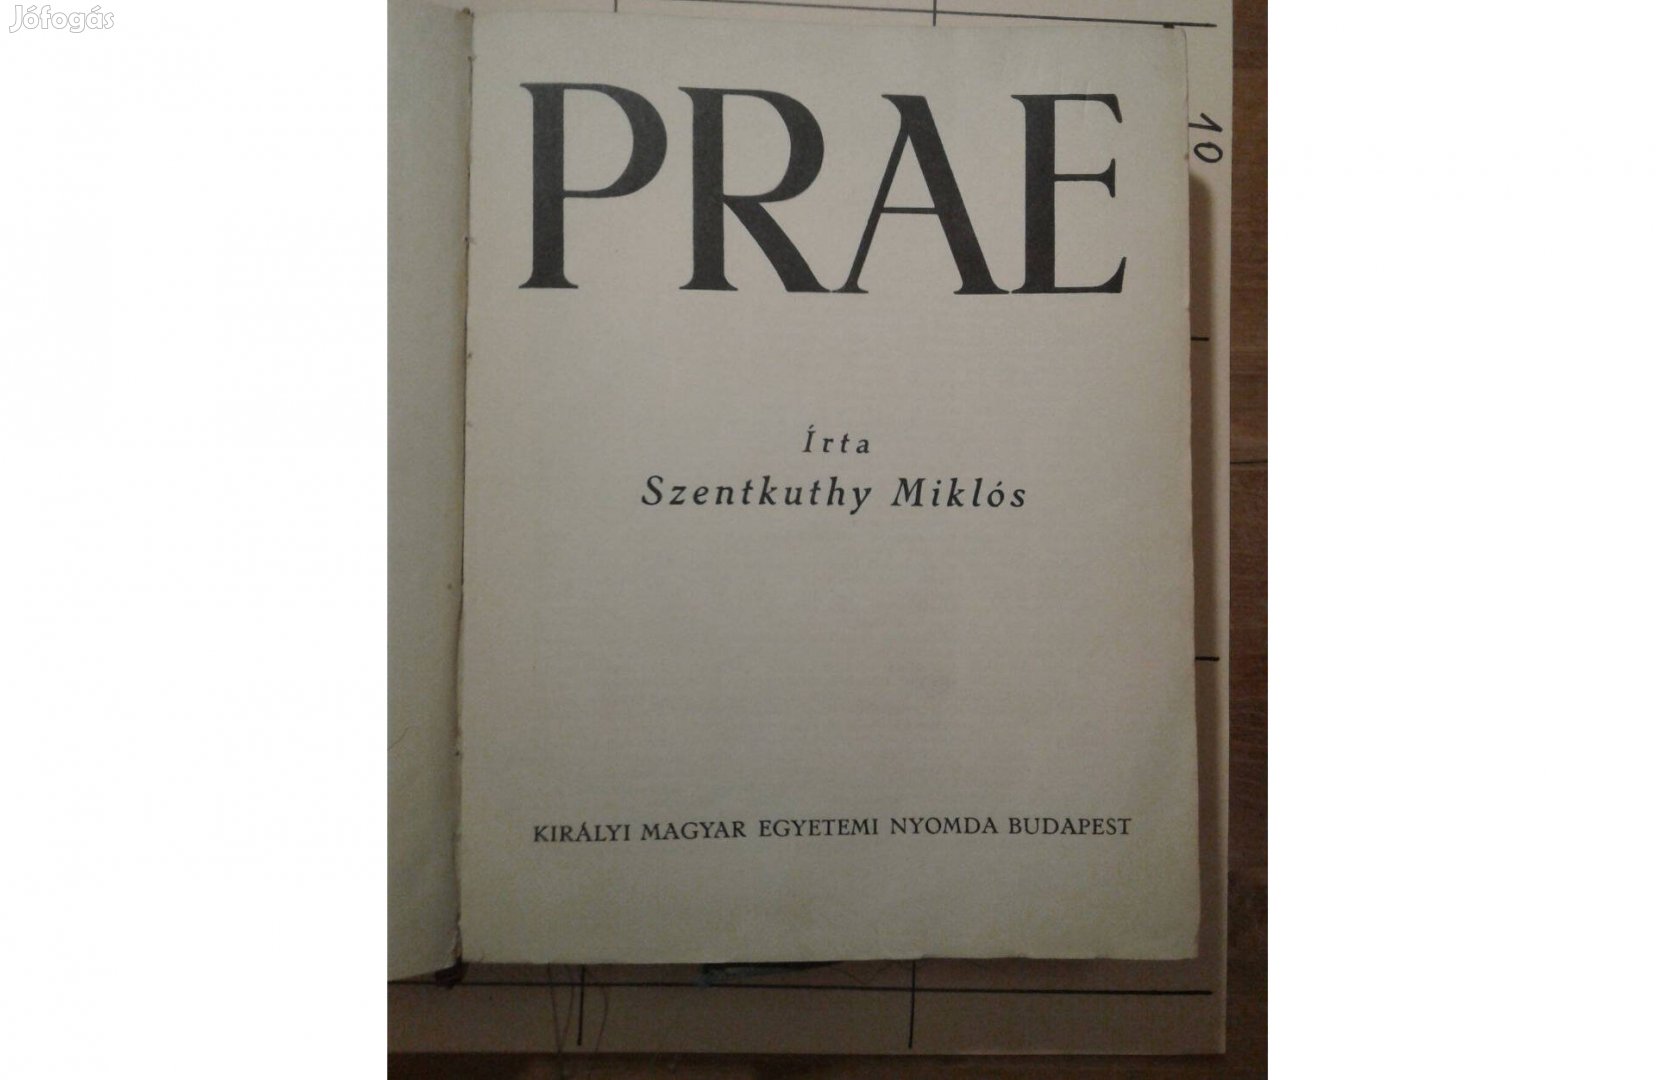 Prae - Szentkuthy Miklós (1934?)